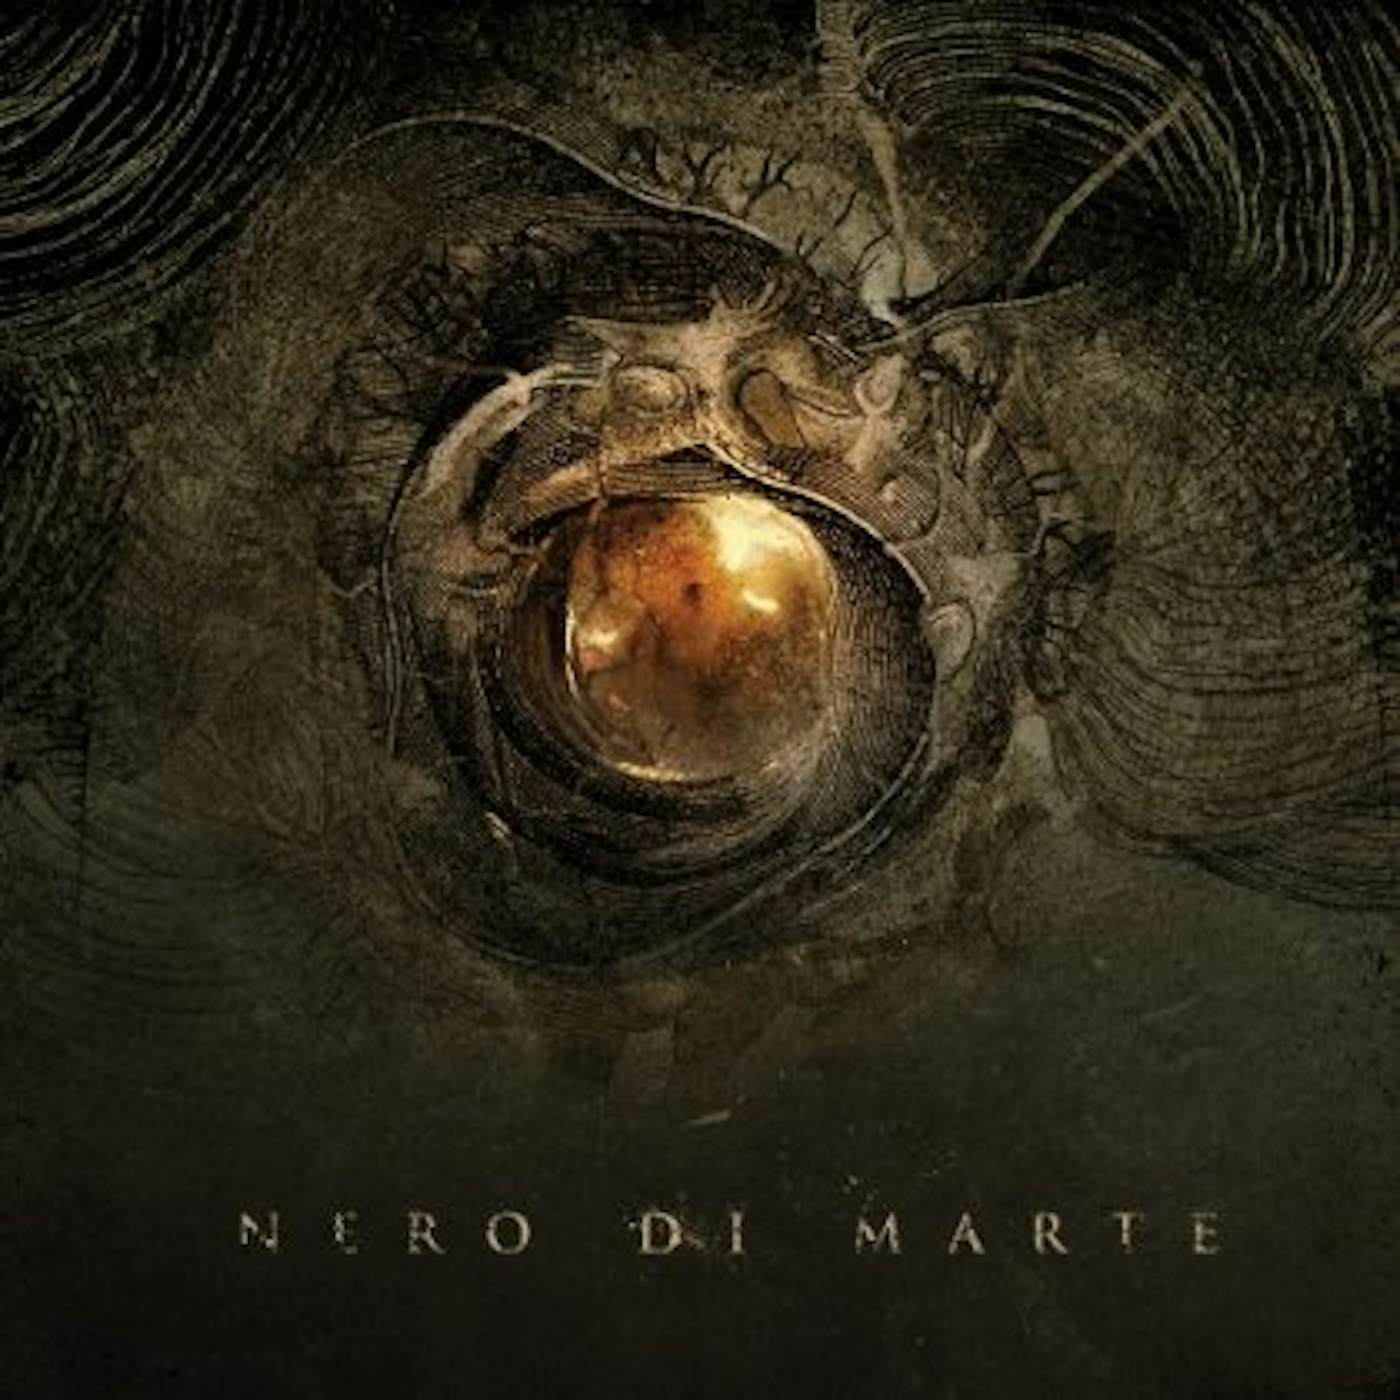 NERO DI MARTE CD